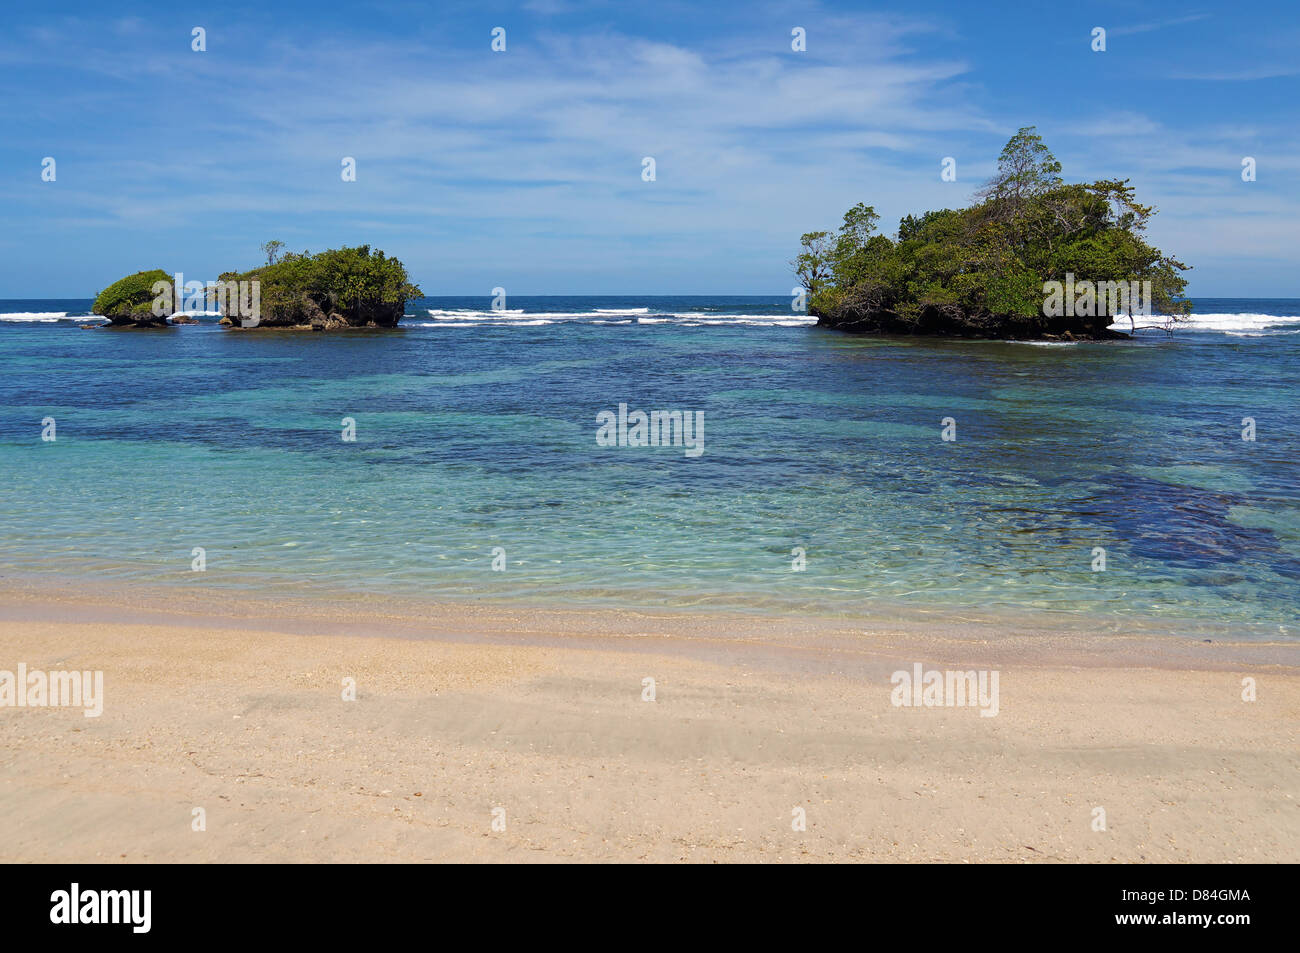 Plage de sable avec des îlots dans les eaux claires de la mer des Caraïbes, l'île de Bastimentos, Bocas del Toro, PANAMA Banque D'Images